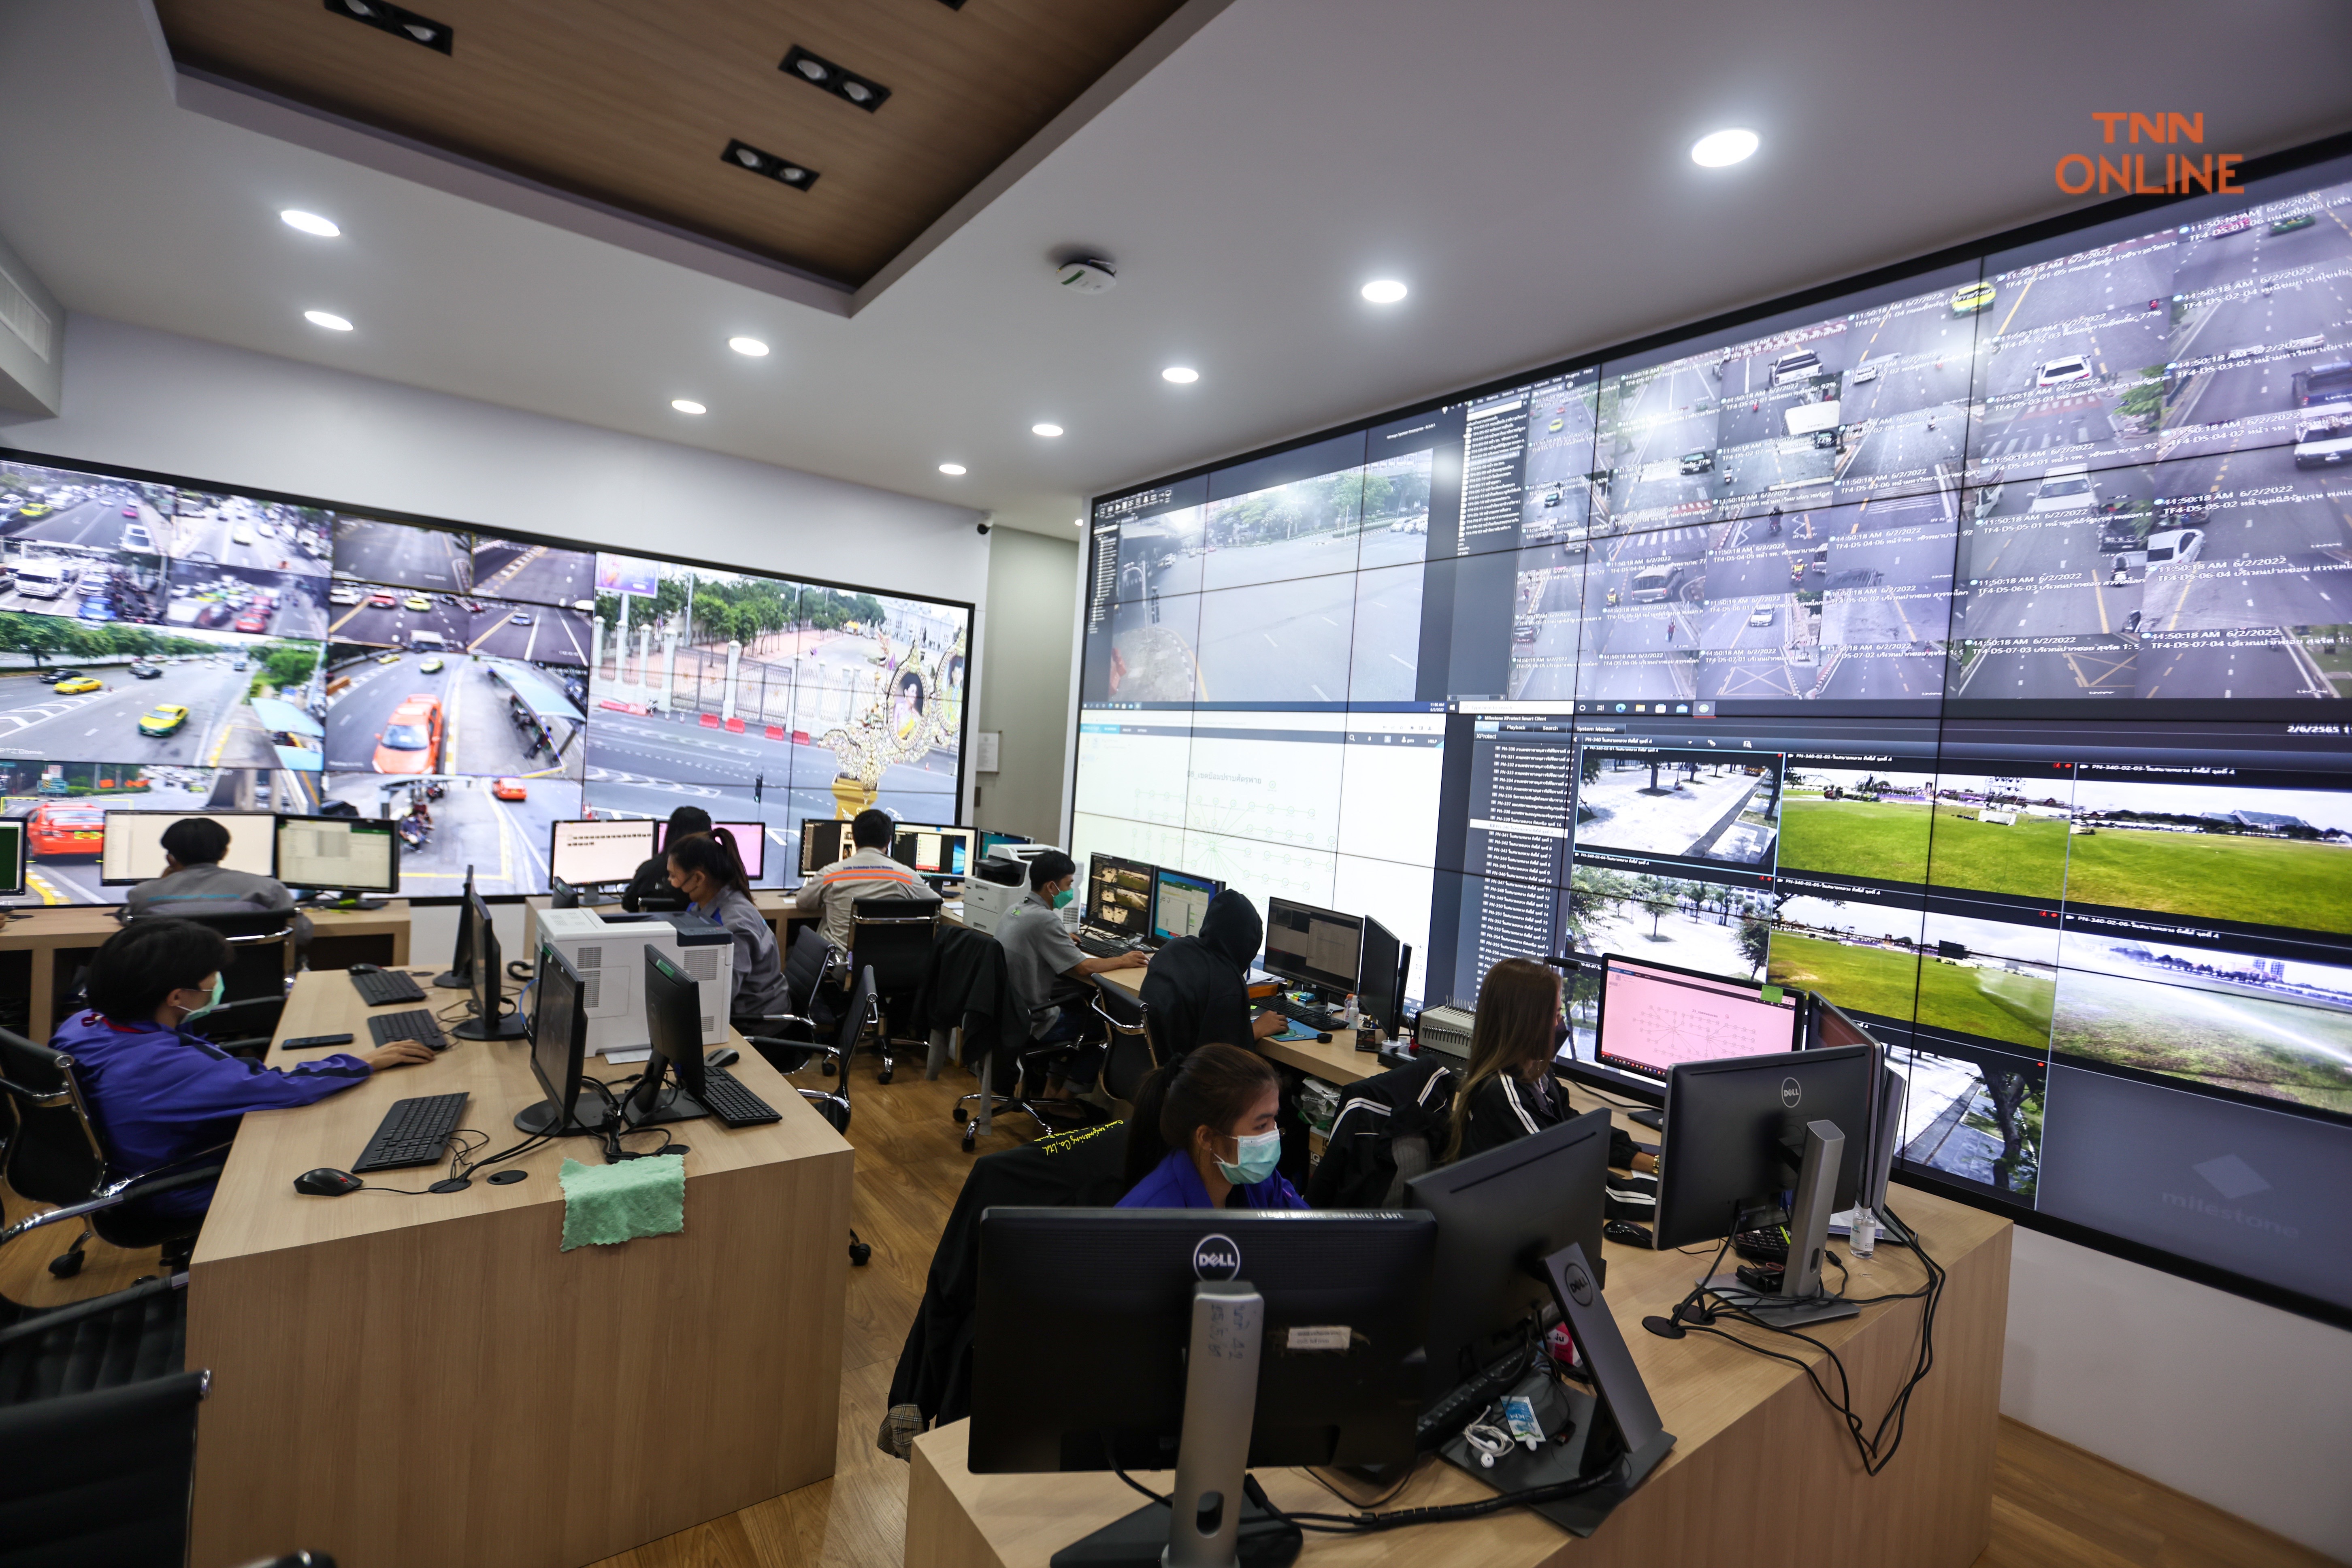 ประมวลภาพ "ชัชชาติ" พาชมห้อง CCTV เชื่อมระบบ Traffy Fondue รับแจ้งปัญหาพร้อมประเมินผลงานรายเขต เพื่อกระจายอำนาจให้ประชาชนมีส่วนร่วมพัฒนาเมือง